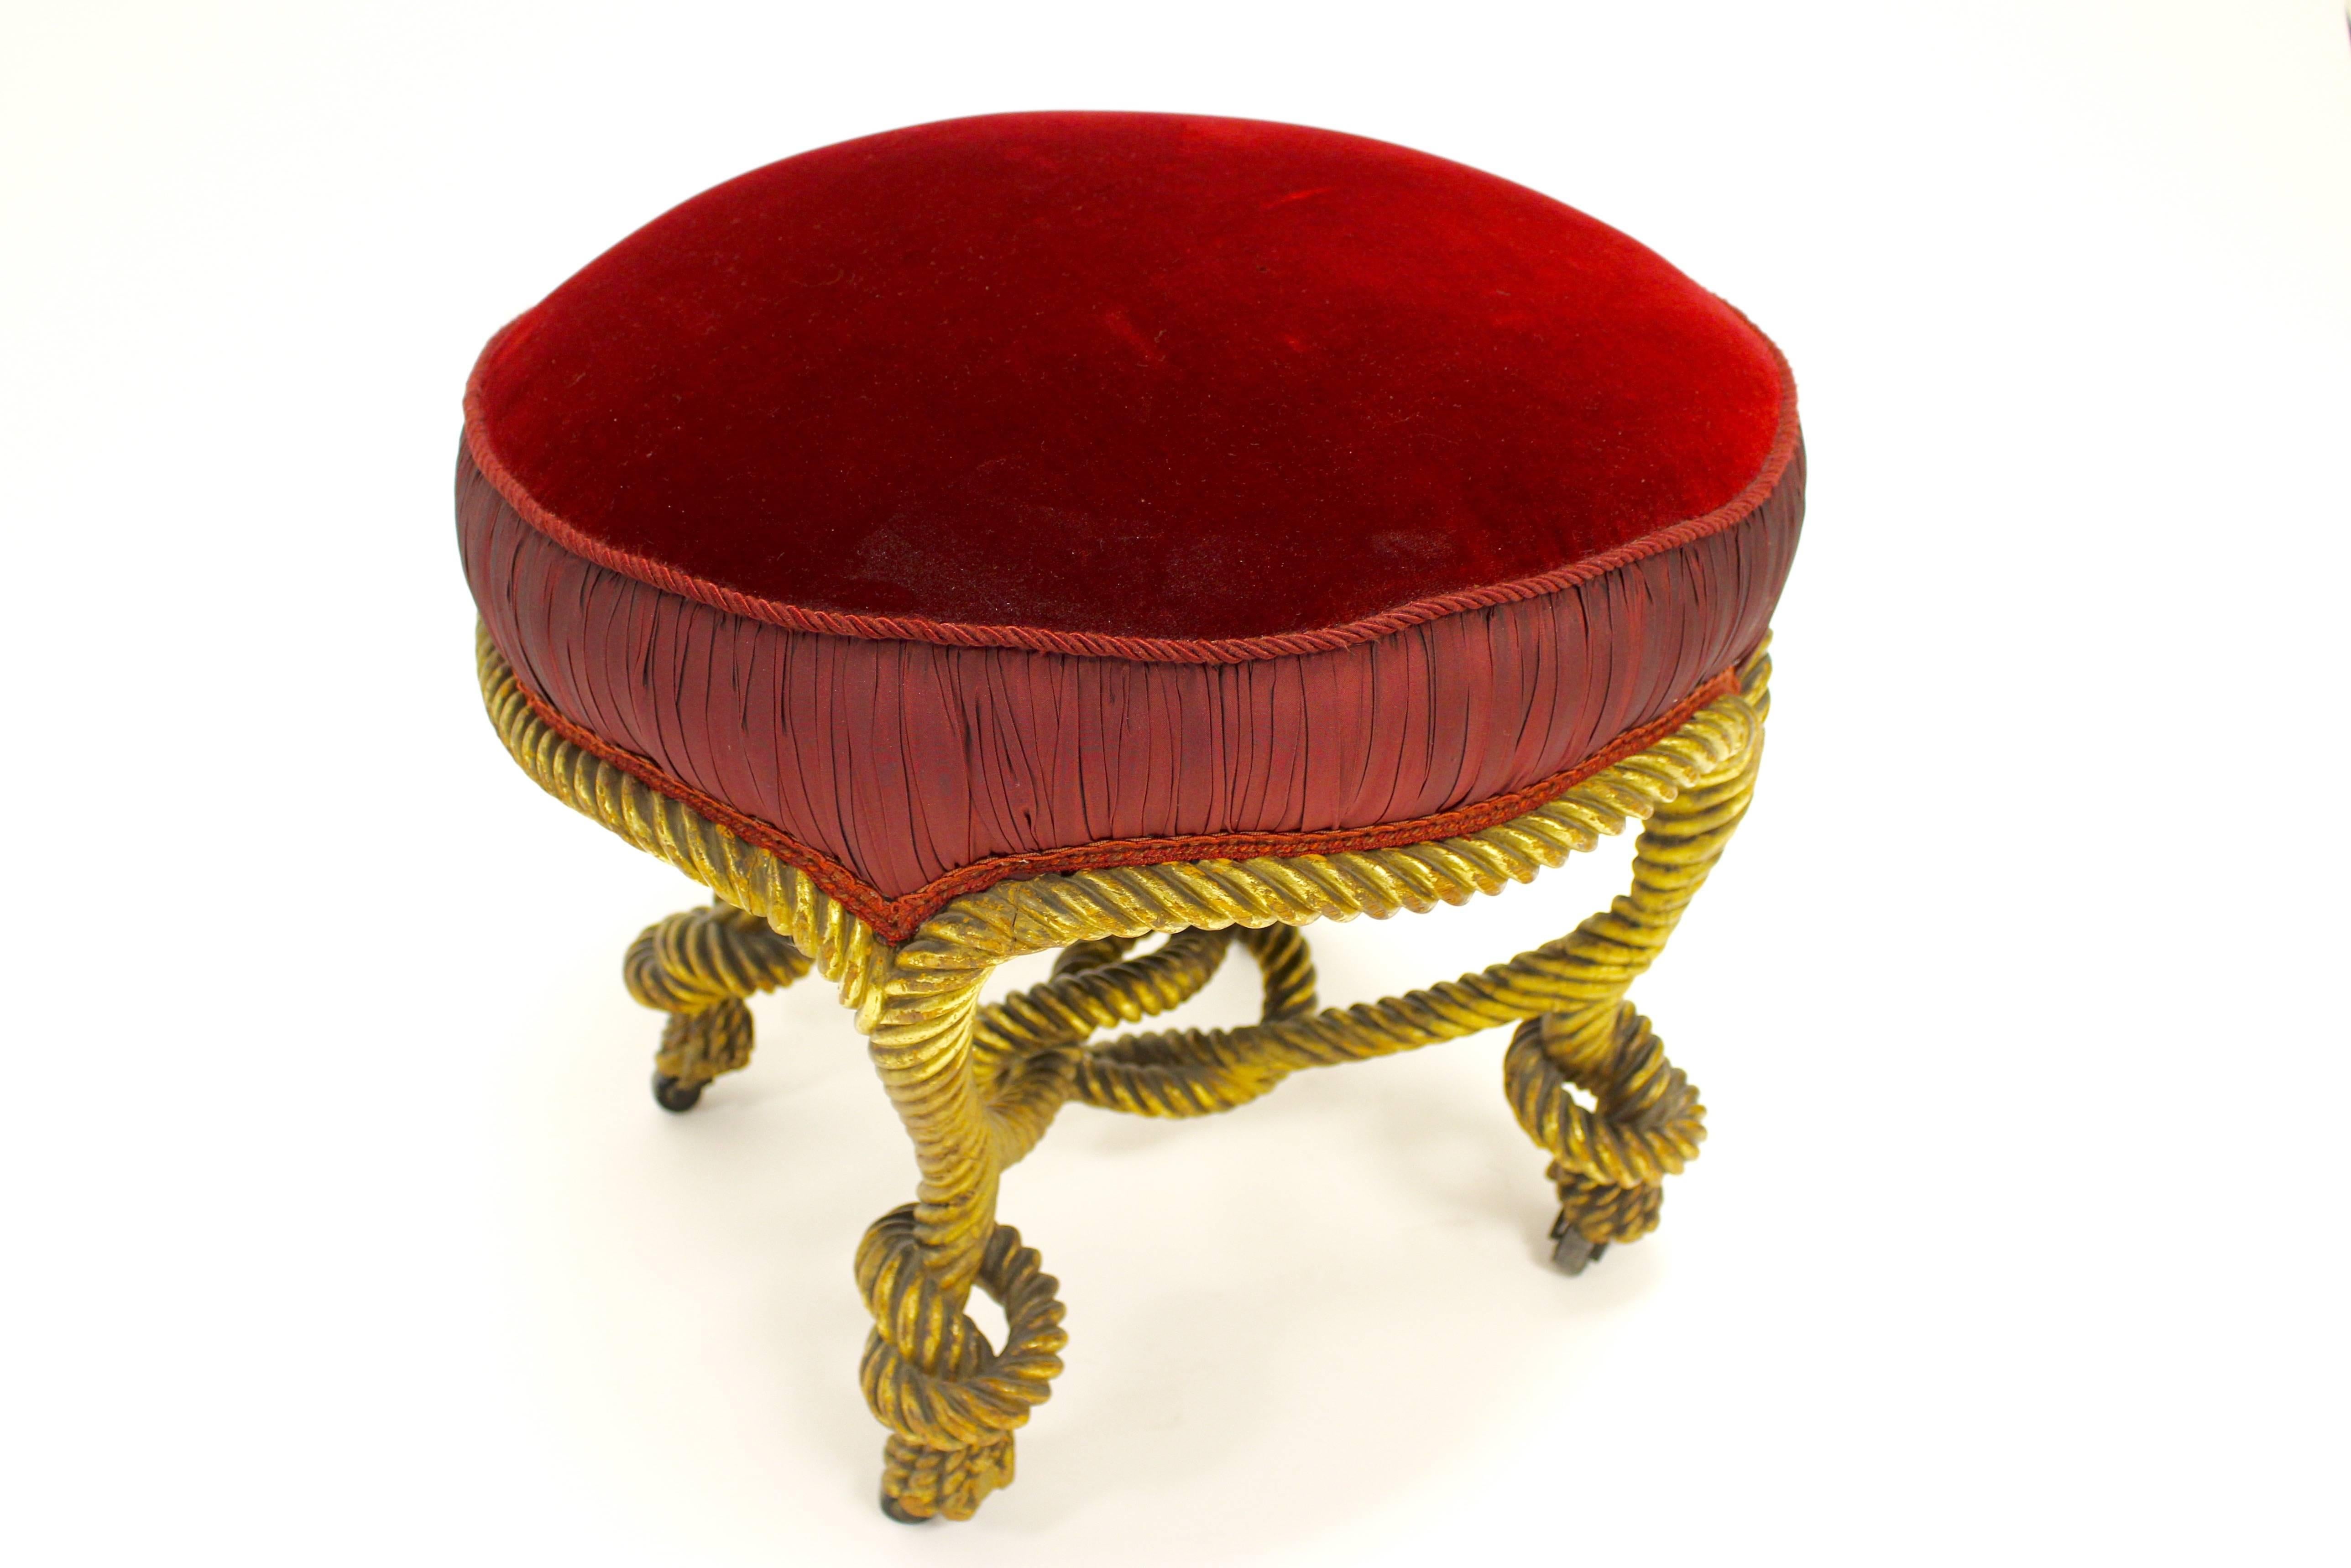 Eleganter Hocker aus vergoldetem Holz im Stil von Napoleon III. mit einem runden, gepolsterten Sitz, der mit rotem Samtstoff bezogen ist. Die äußere Kante des Sitzes ist mit wunderschönen Raffungen versehen, die von seilartigen und geschwungenen